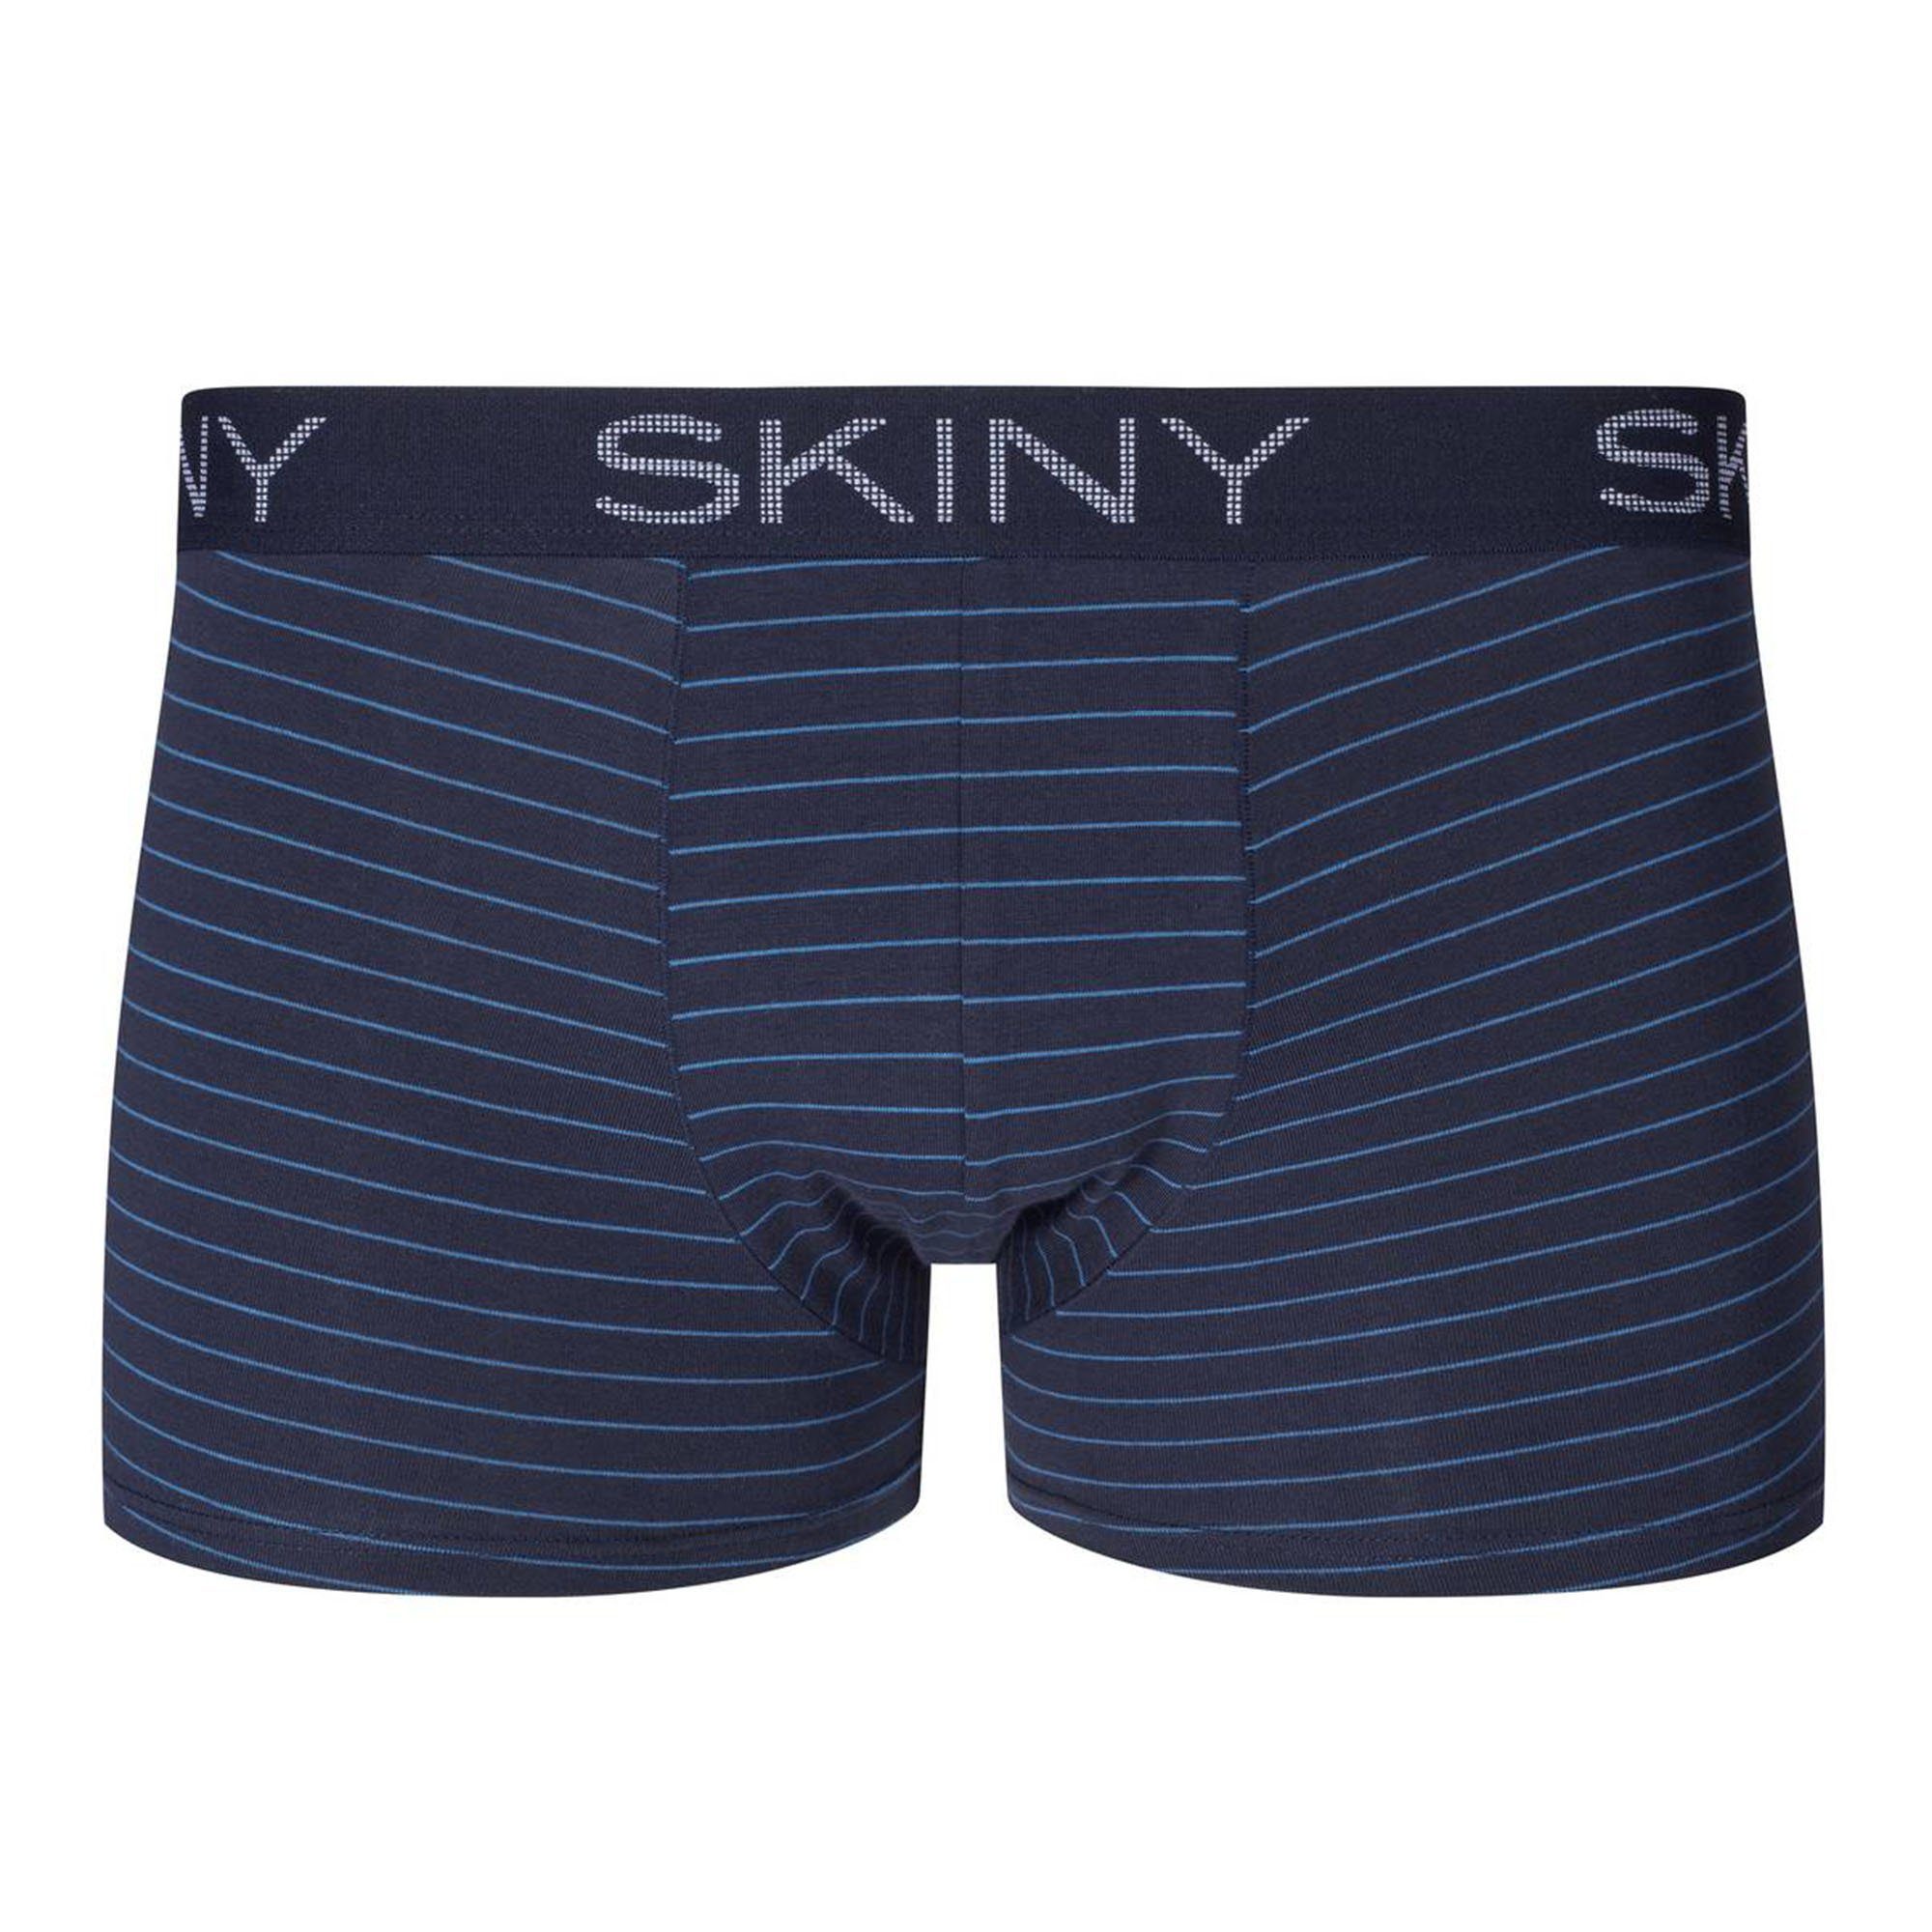 Blau Skiny - Pants Trunks, 2er Boxer Herren Boxer Pack Short,